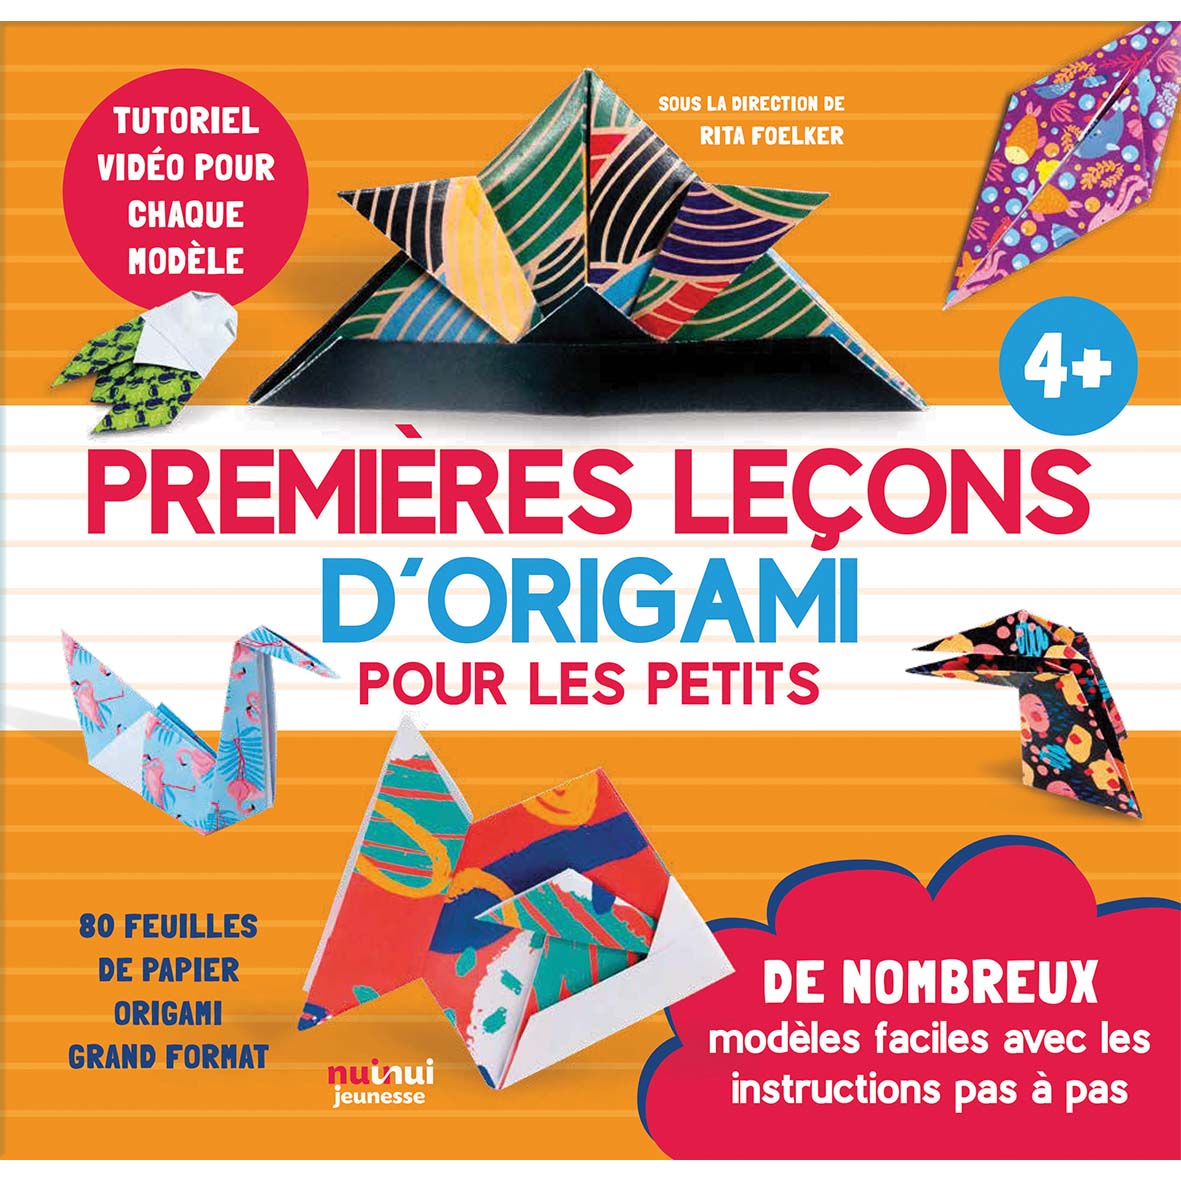 Premières leçons d’origami pour les petits